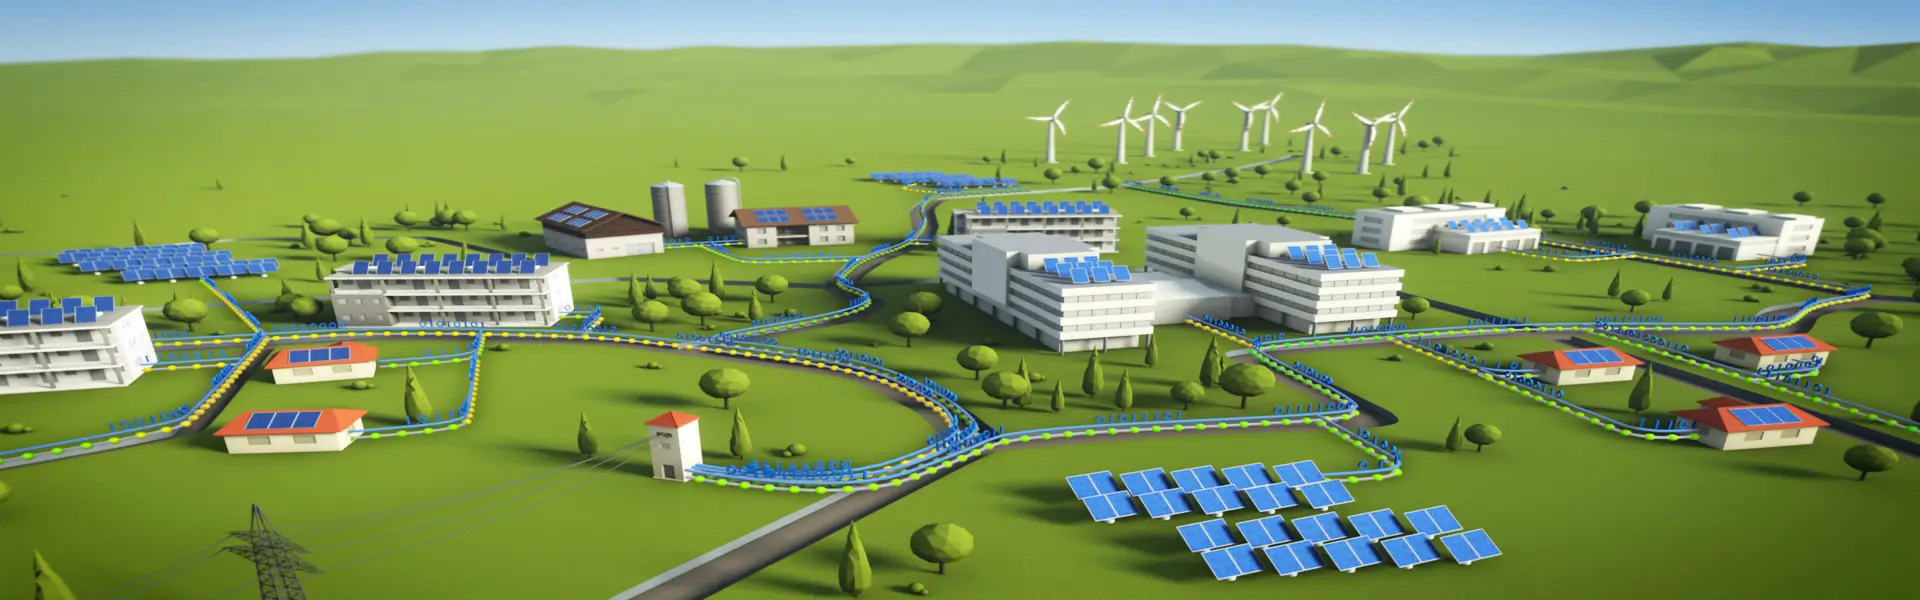 Μία πόλη του μέλλοντος με ανανεώσιμες πηγές ενέργειας και καθαρό περιβάλλον